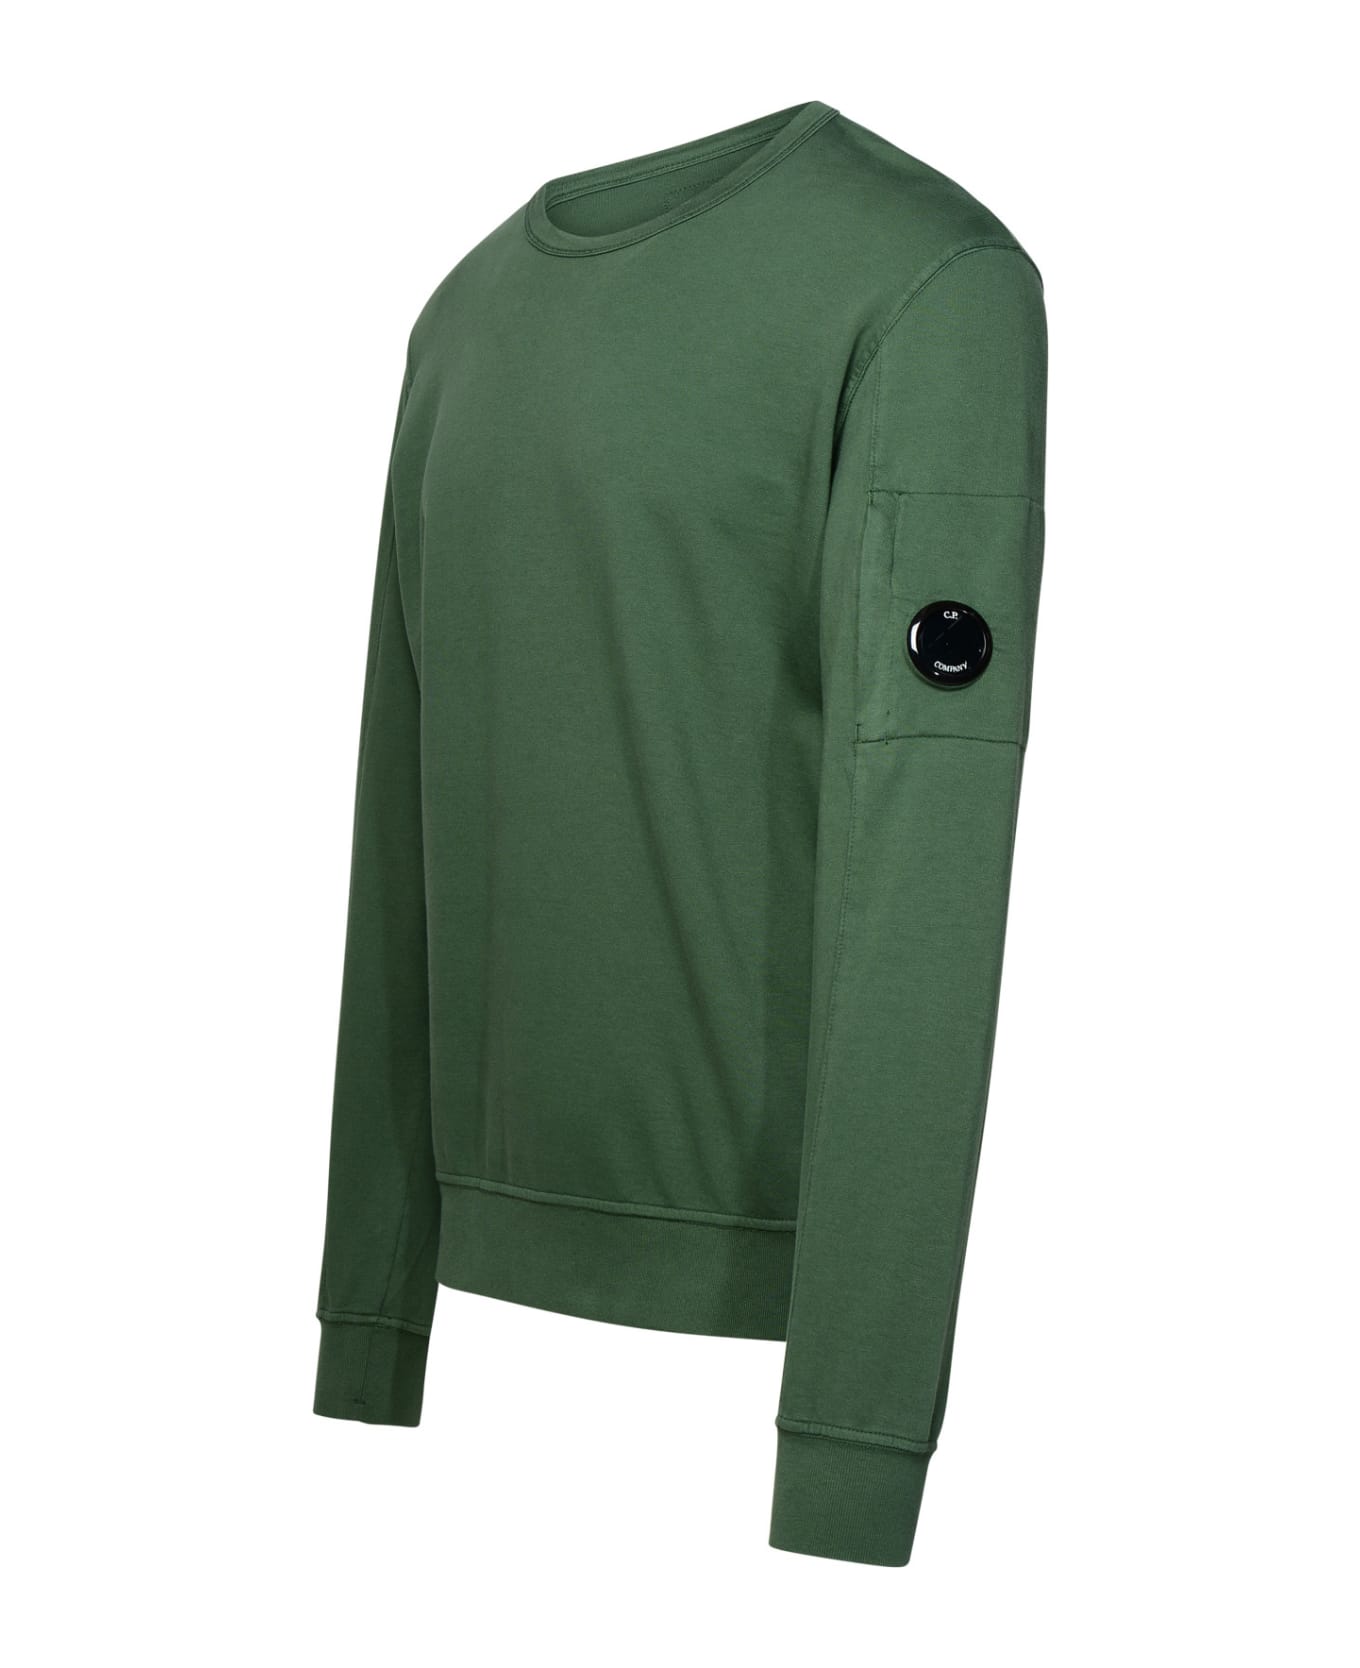 C.P. Company 'light Fleece' Green Cotton Sweatshirt - Verde